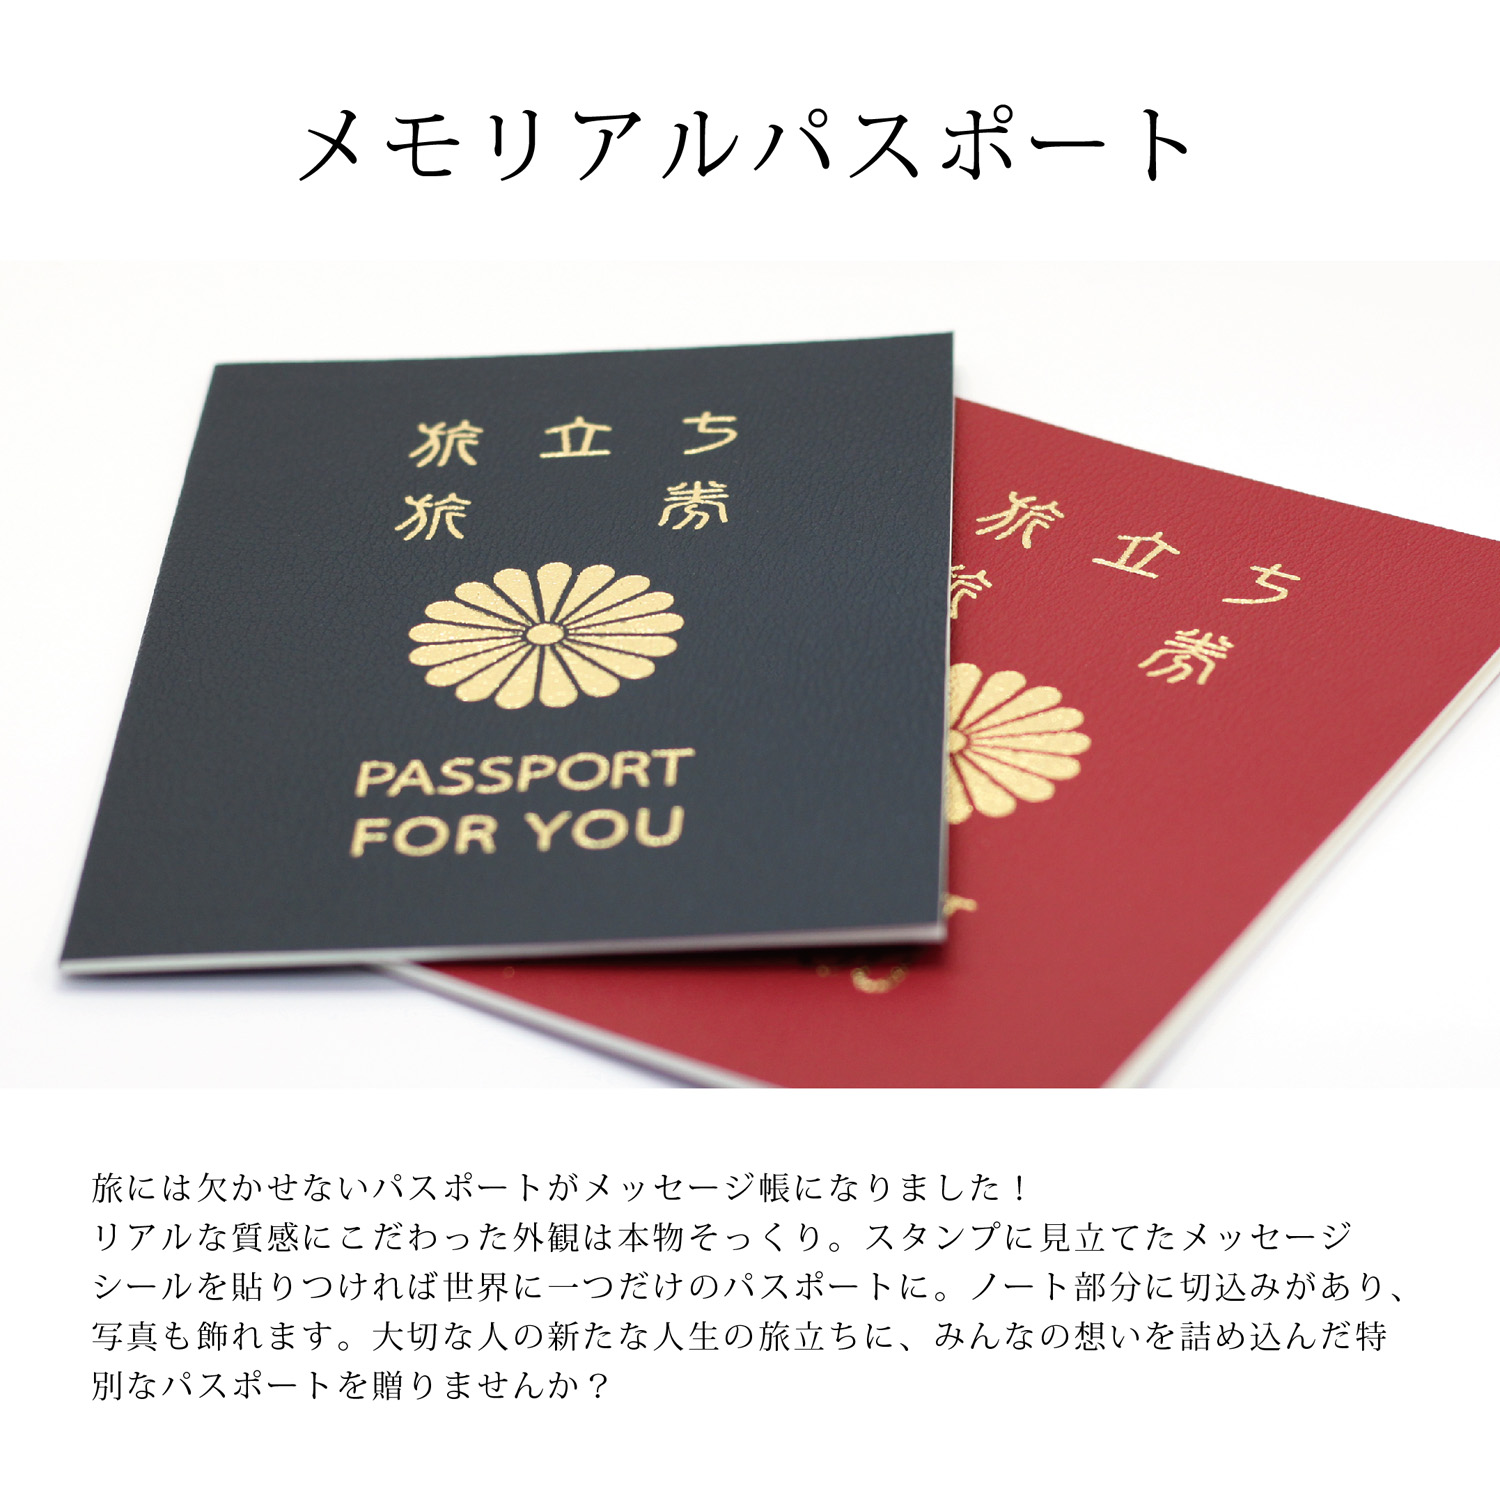 メモリアルパスポート【色紙/寄せ書き】